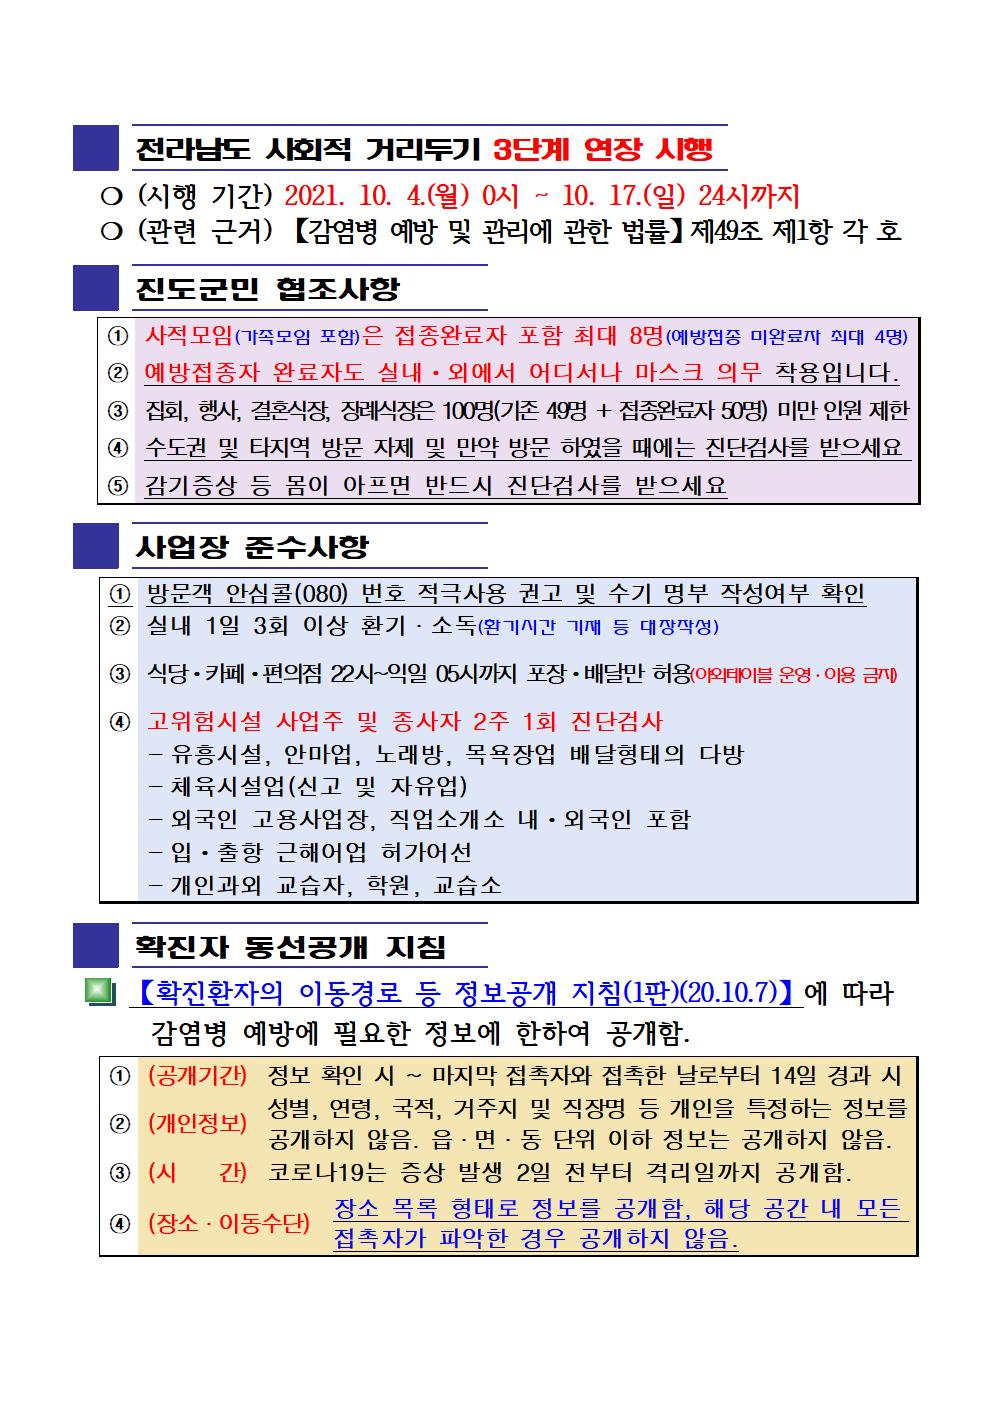 2021년 코로나19 대응 일일상황보고(10월 8일 24시 기준) 첨부#2